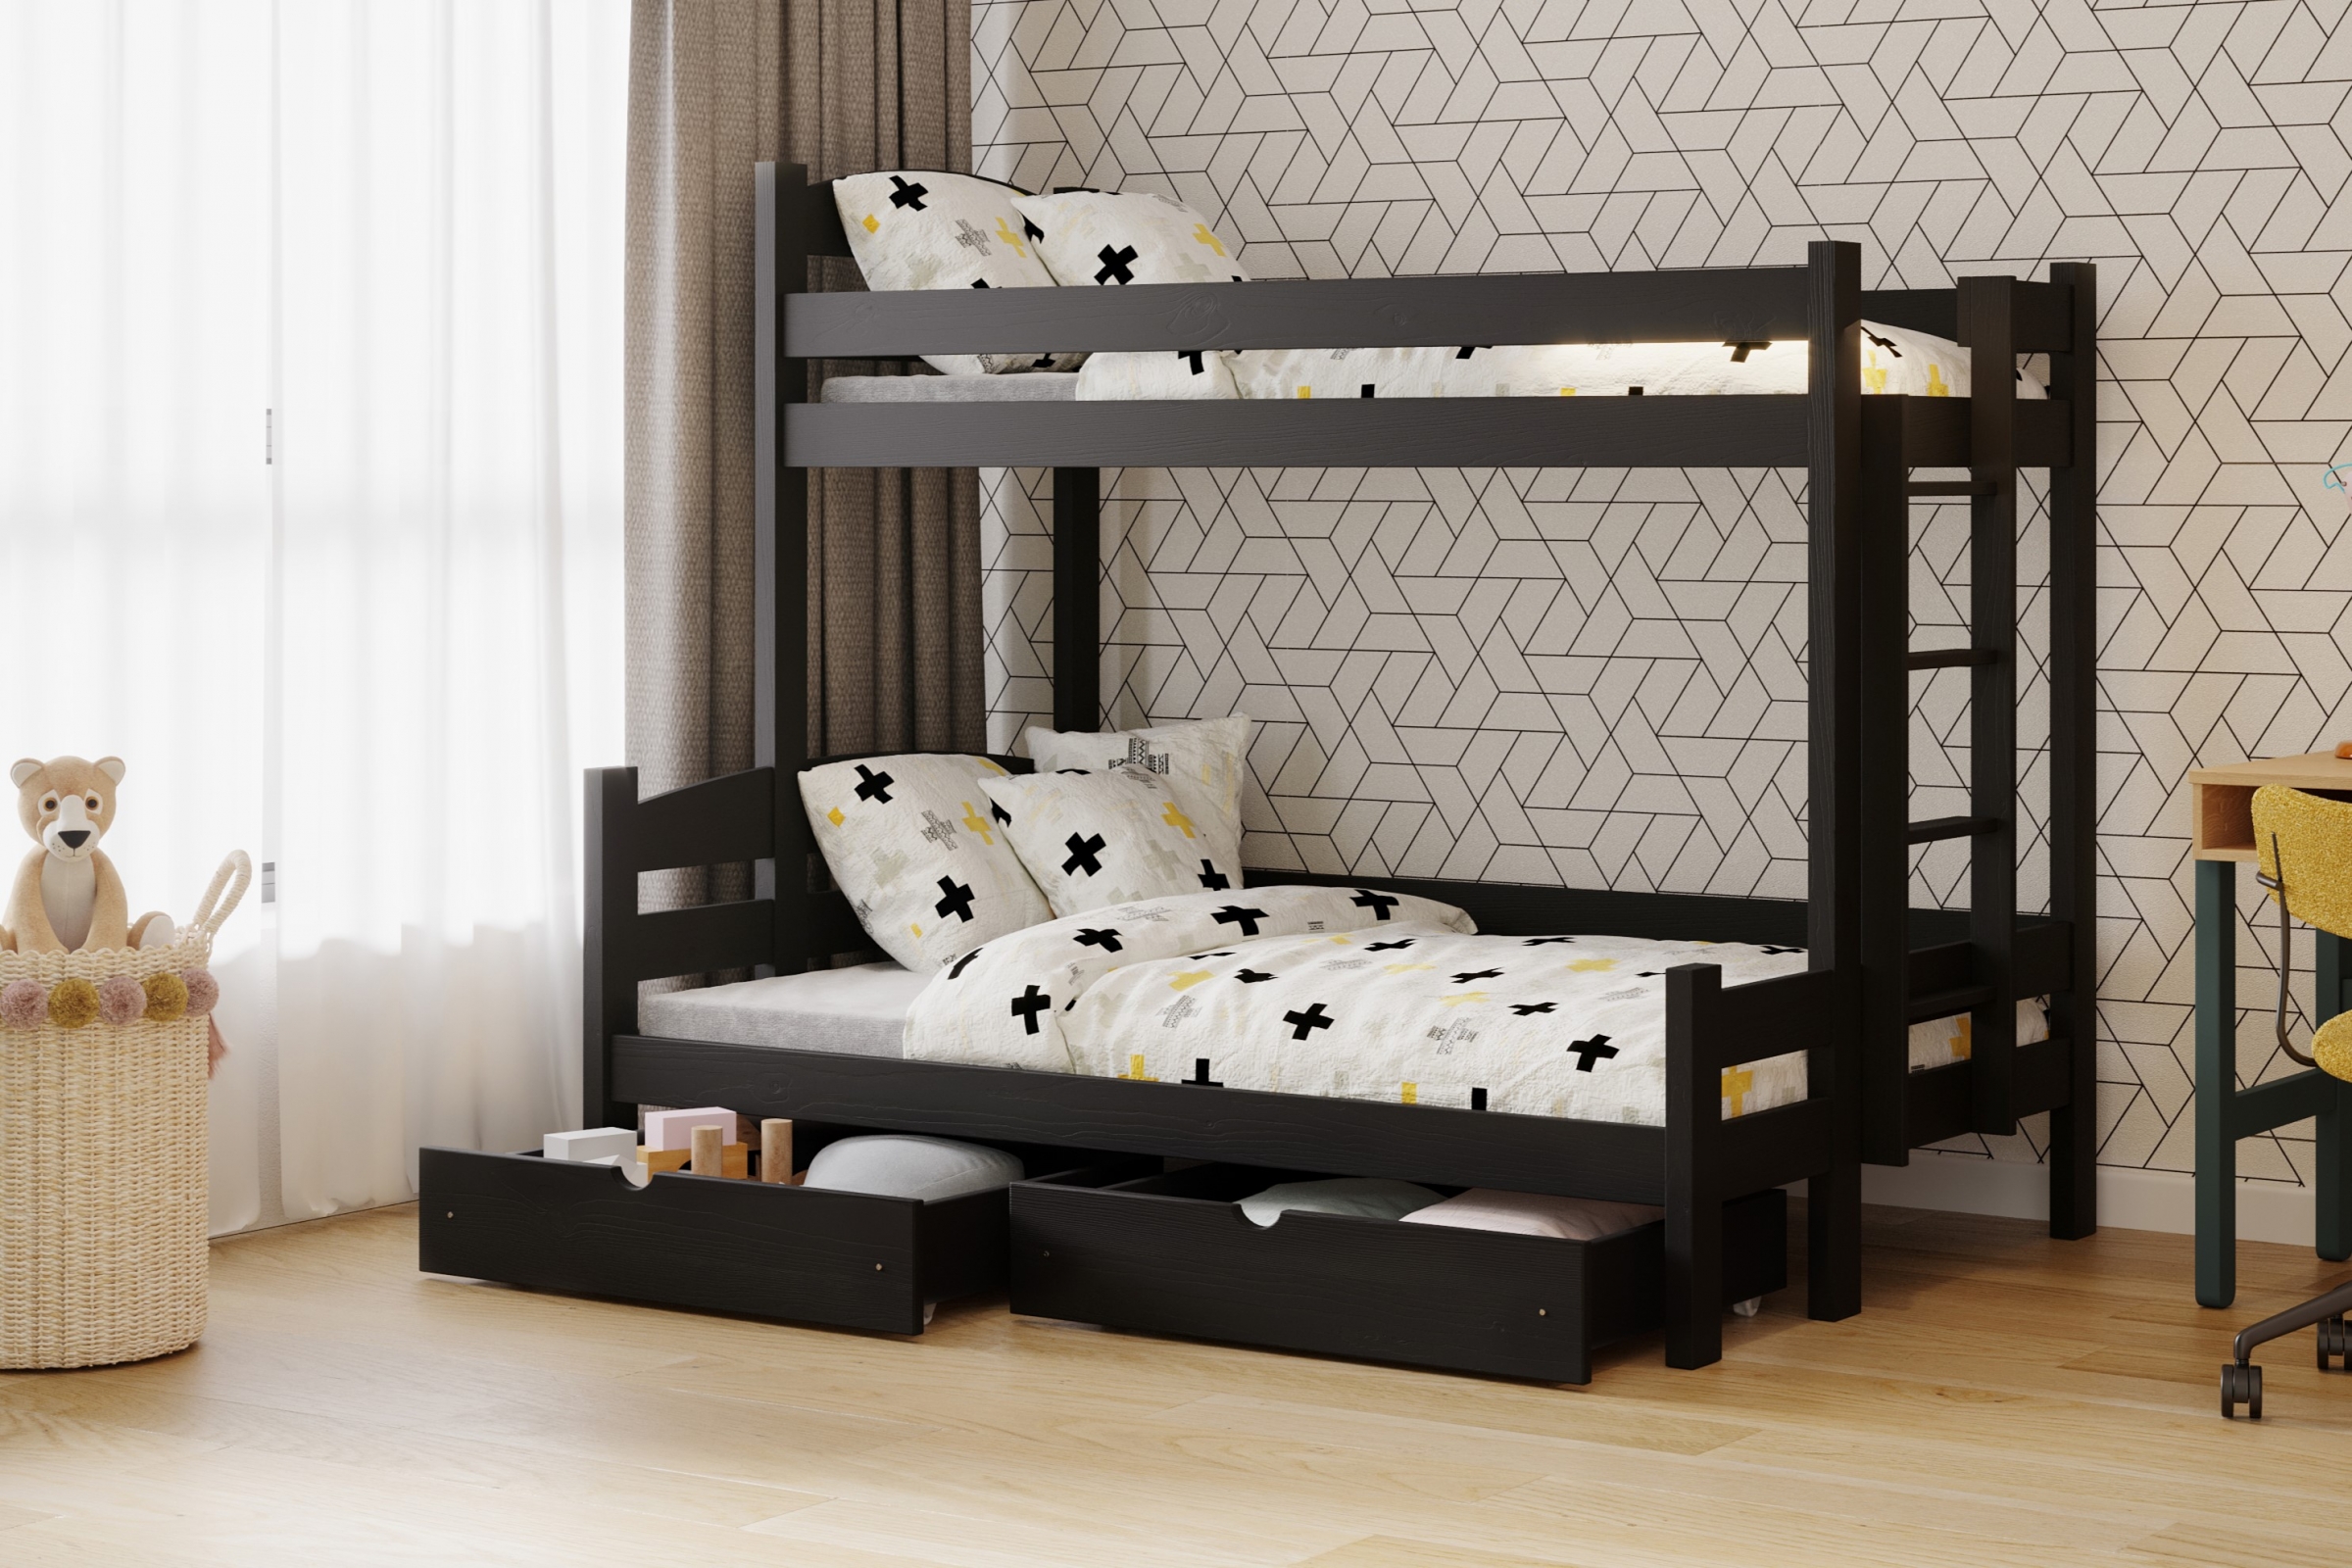 Lovic emeletes ágy, fiókokkal, jobb oldali - 90x200 cm/140x200 cm - fekete Emeletes ágy fiokokkal Lovic - fekete - aranzacja